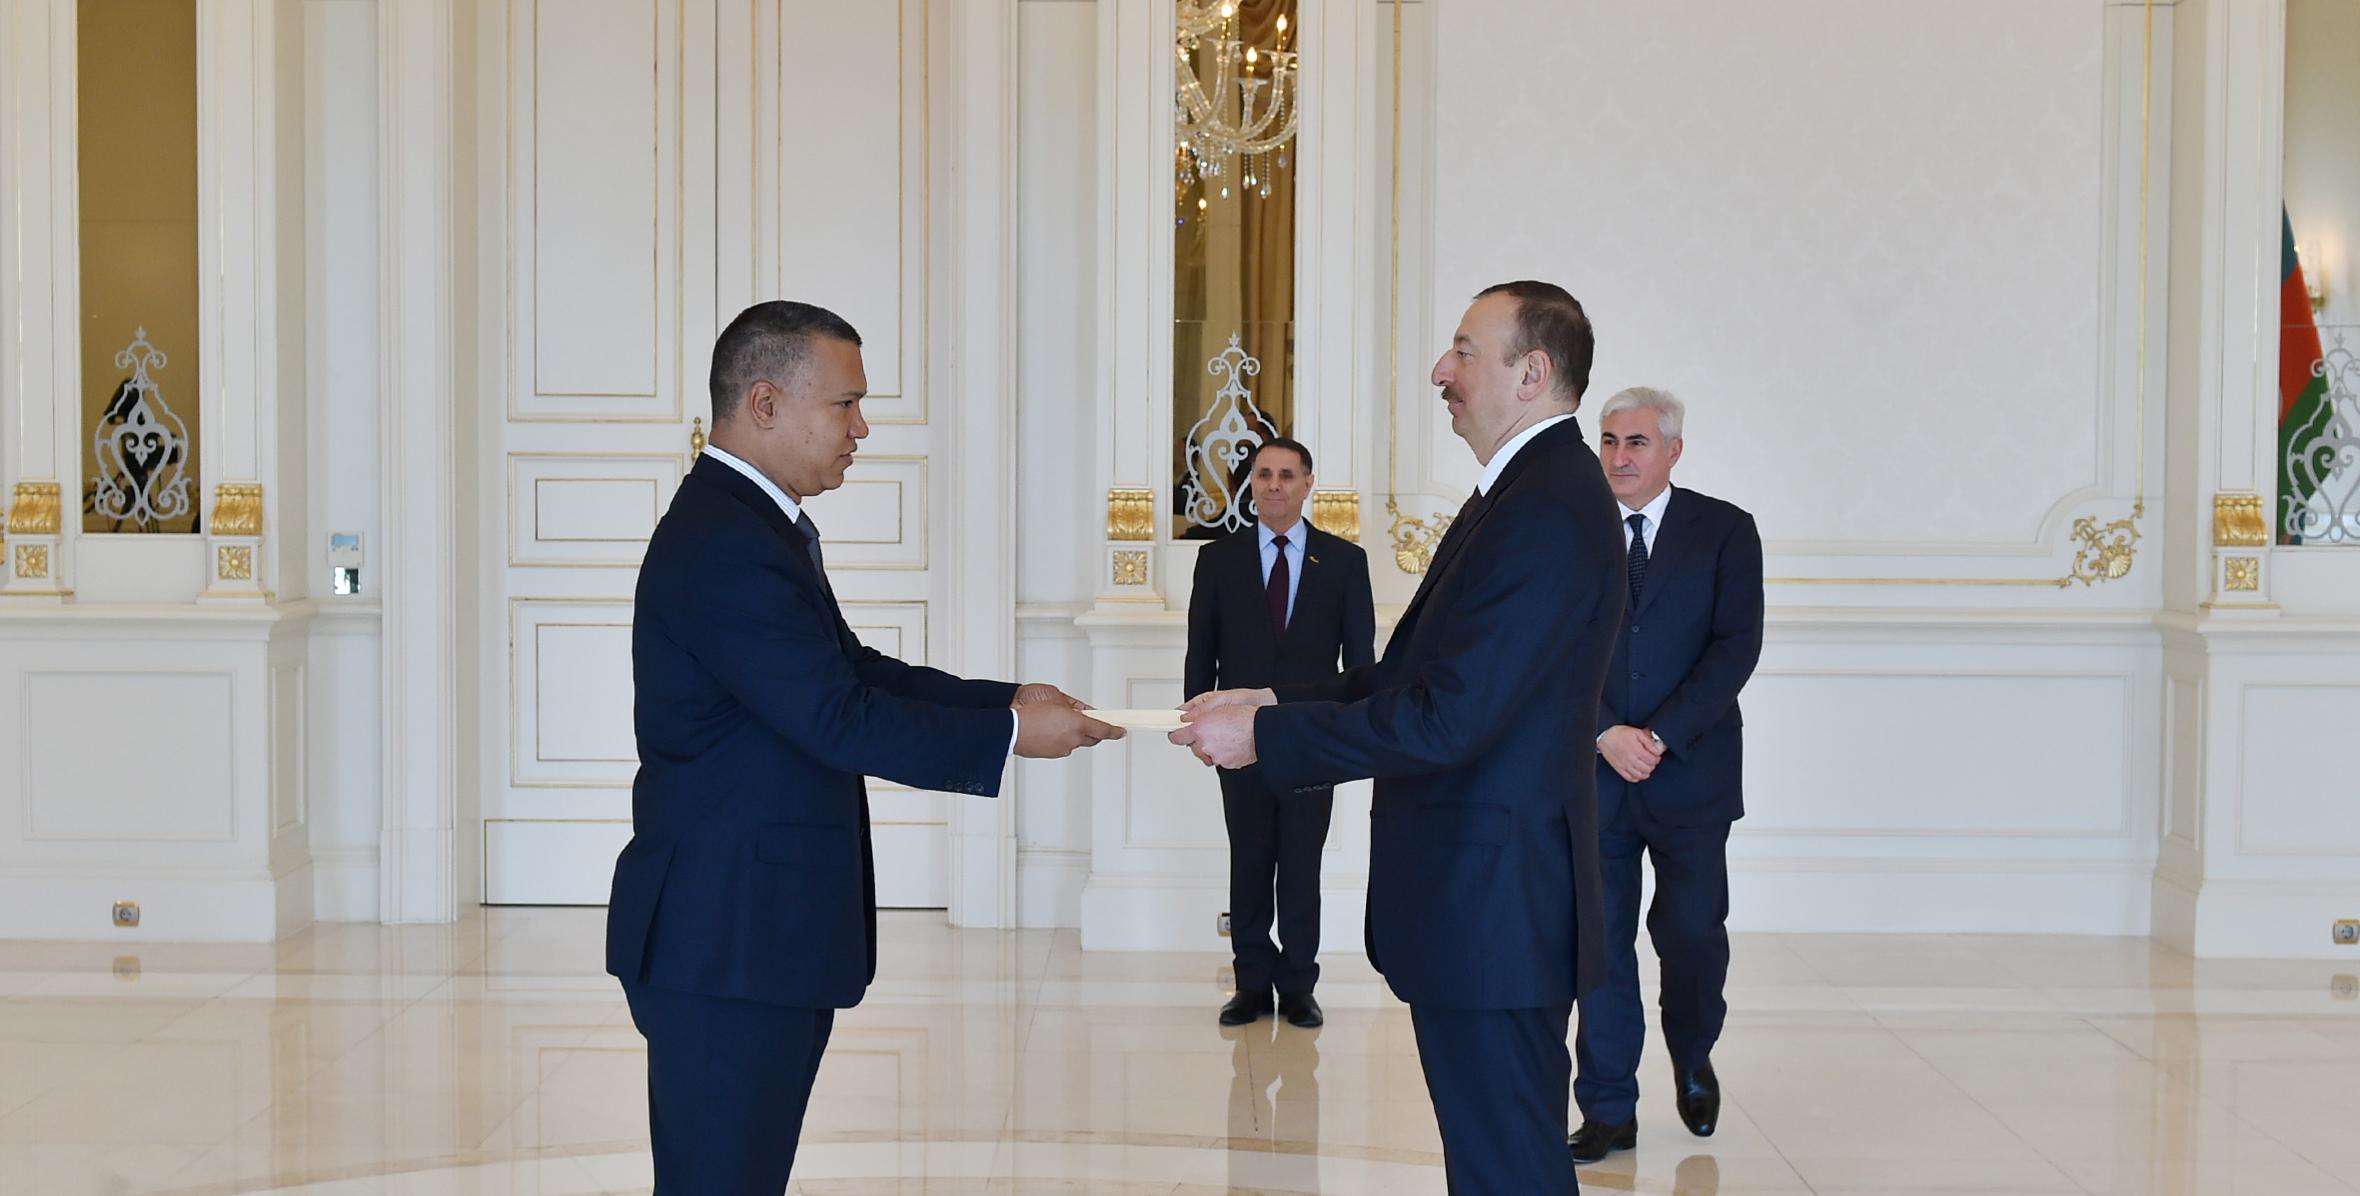 Ильхам Алиев принял верительные грамоты новоназначенного посла Венесуэлы в Азербайджане